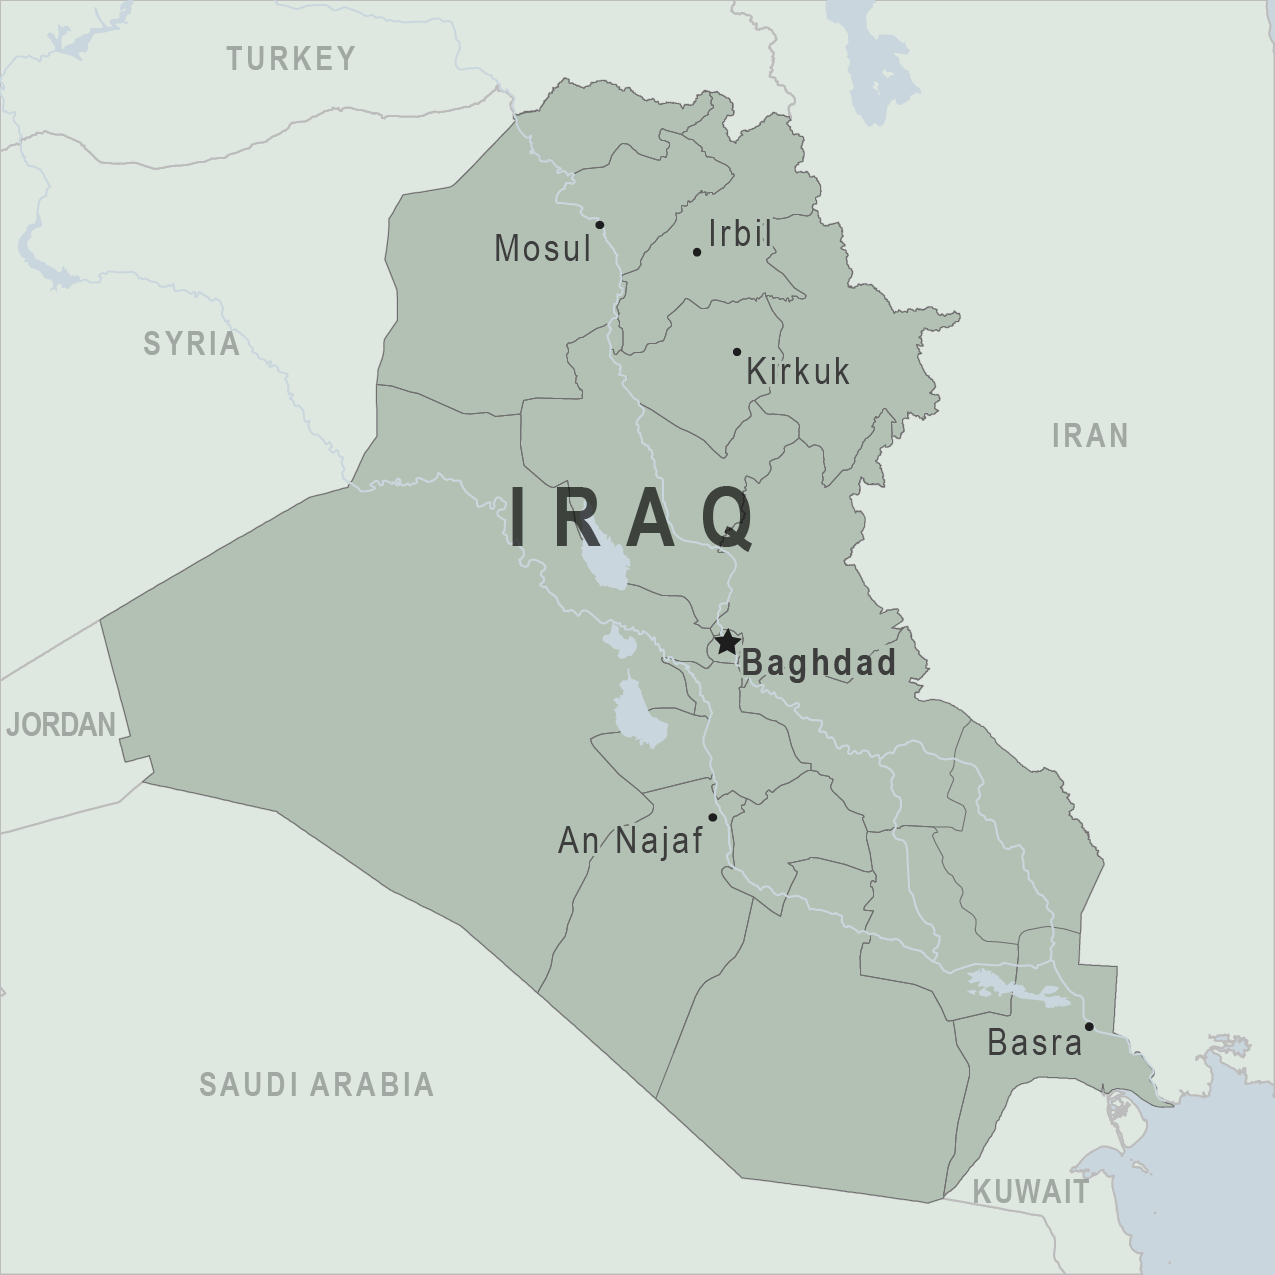 مئة وعشرون شخصية وطنية عراقية تصدر بيانا حول مستقبل العراقأكث